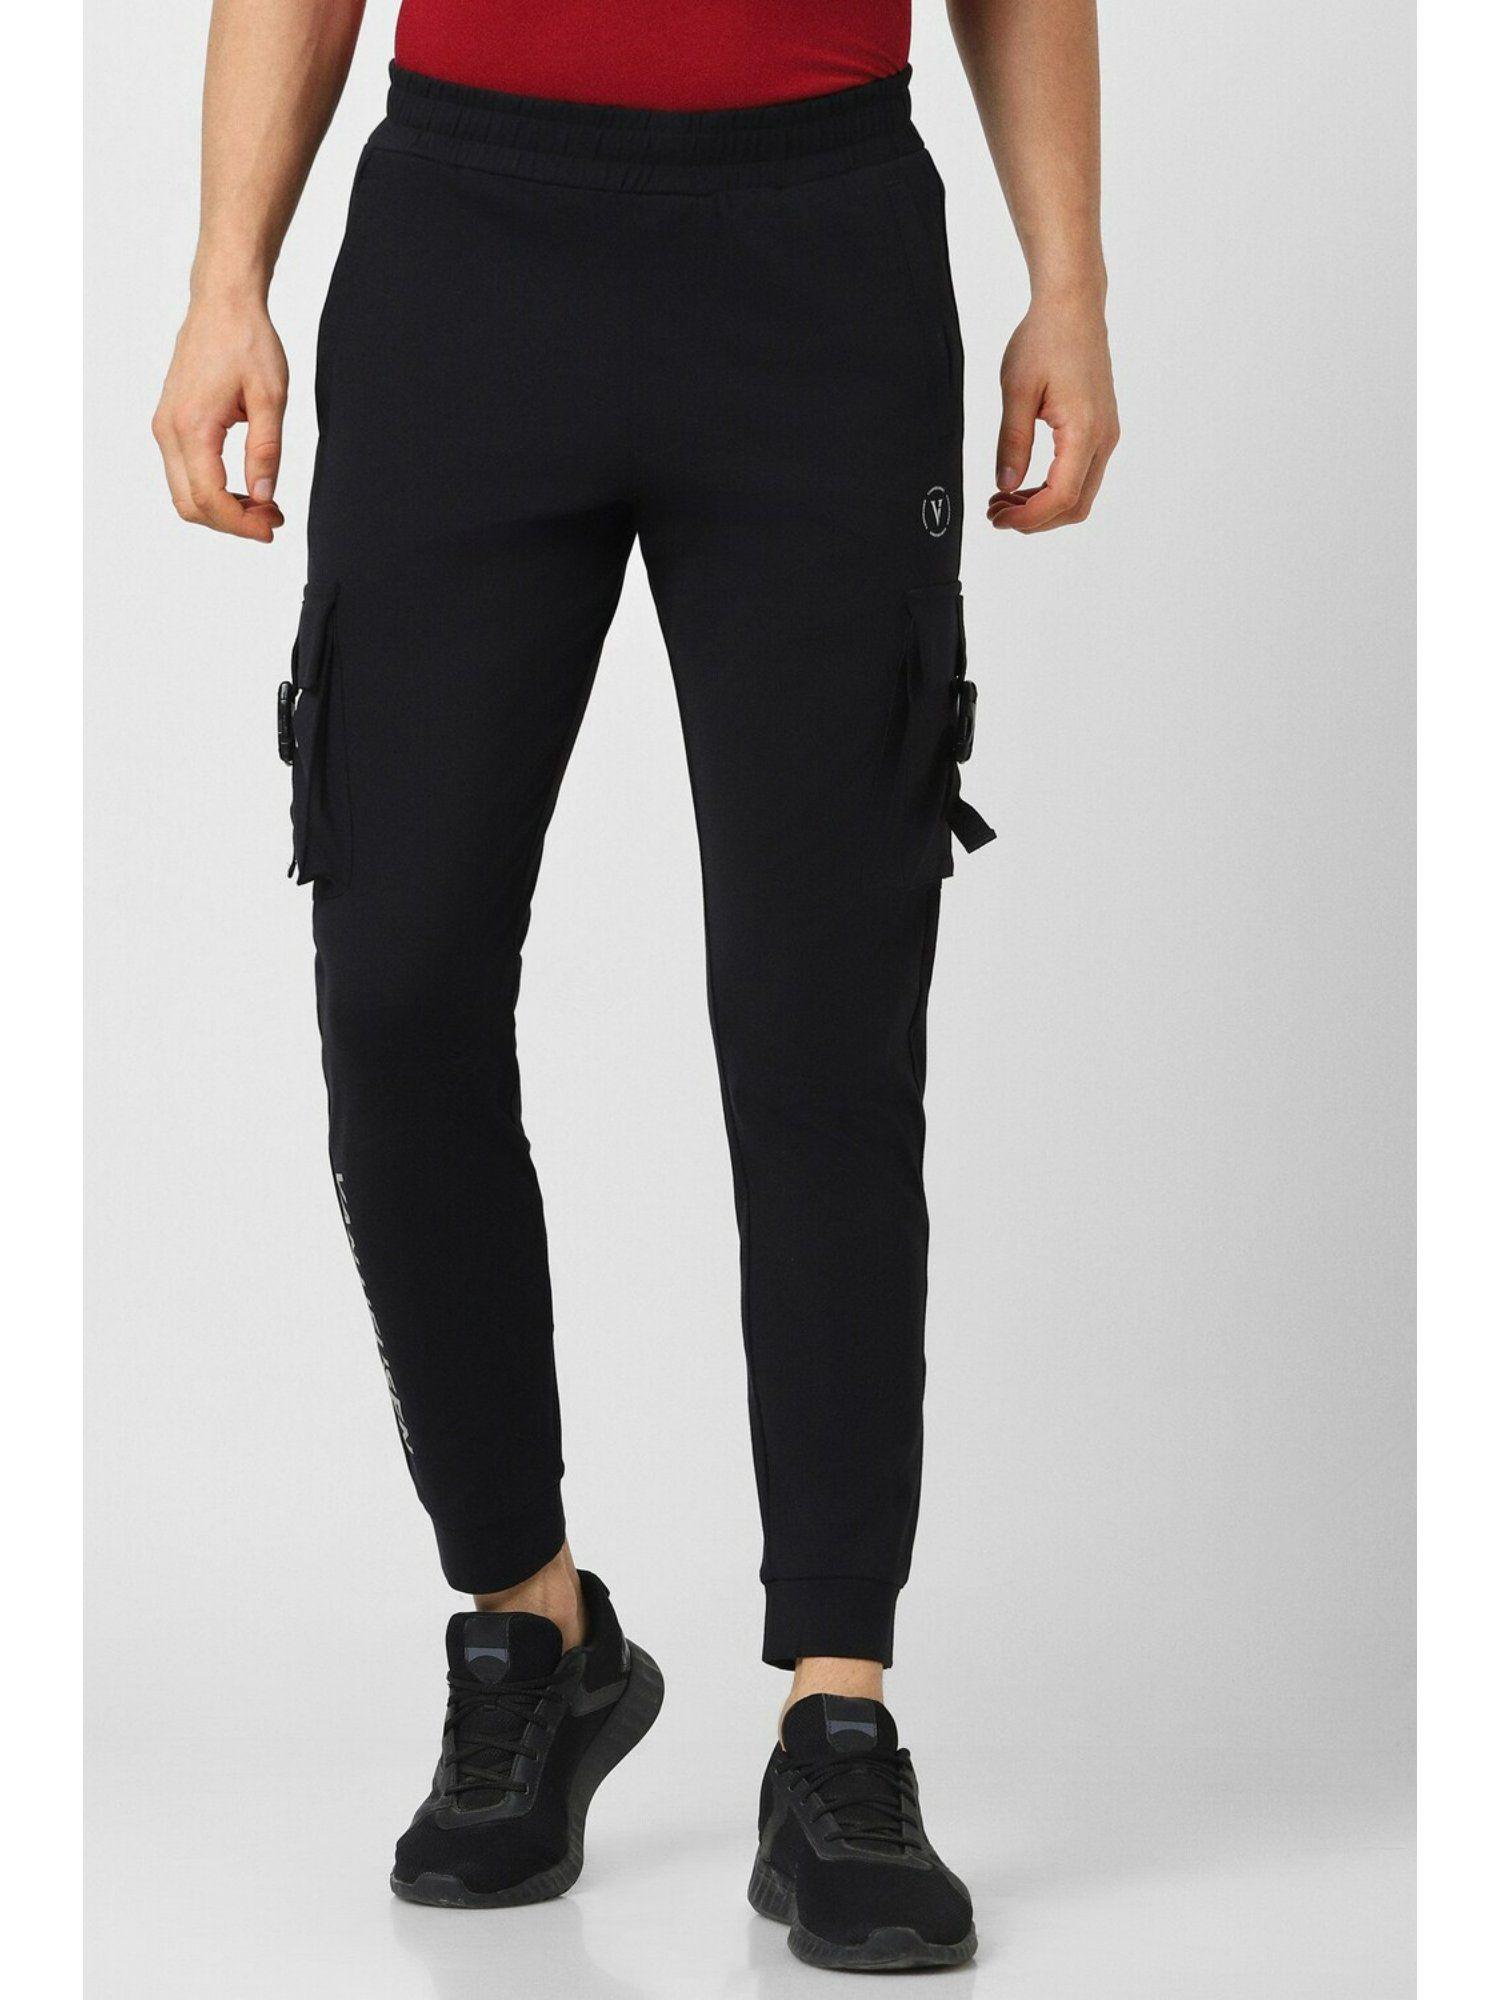 men black solid casual jogger pants